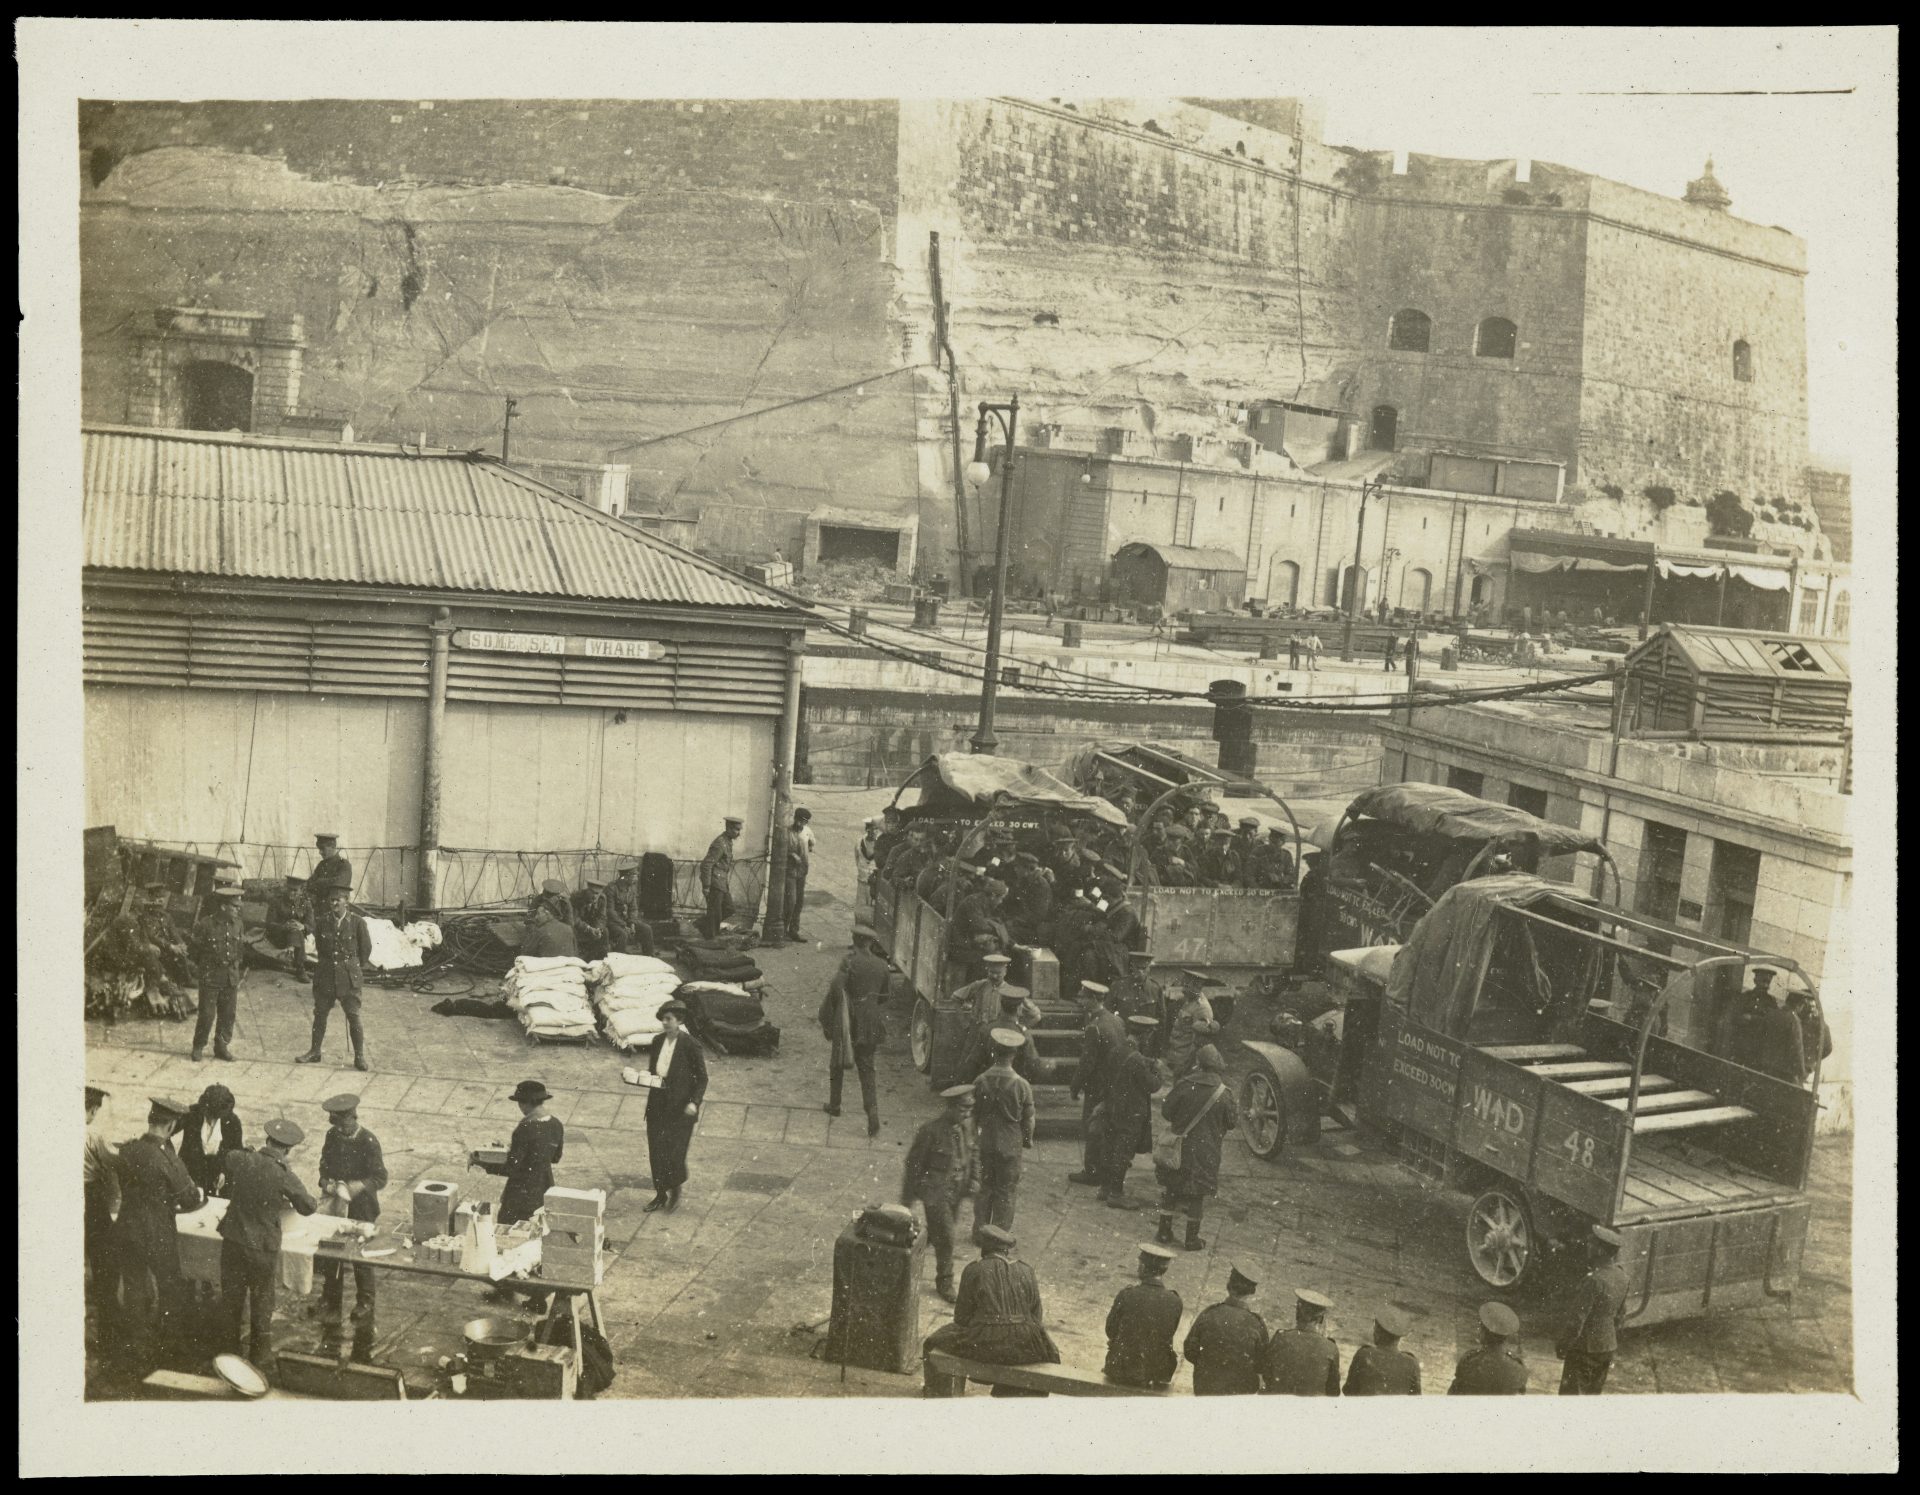 World War One wagons for disembarkation in Malta